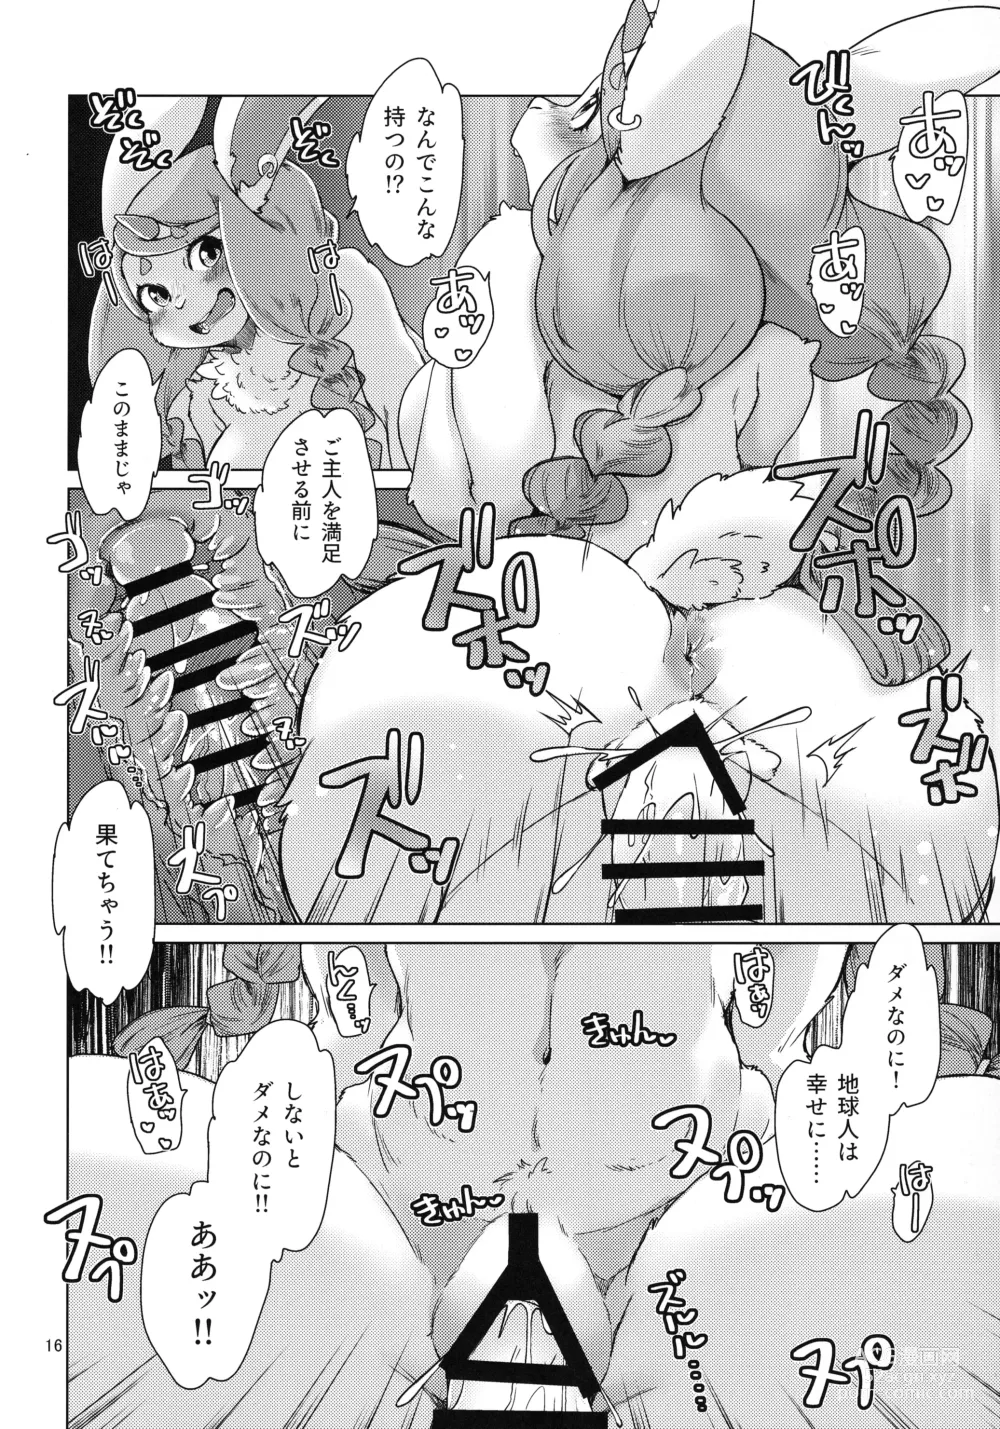 Page 16 of doujinshi Mofumofu Invasion